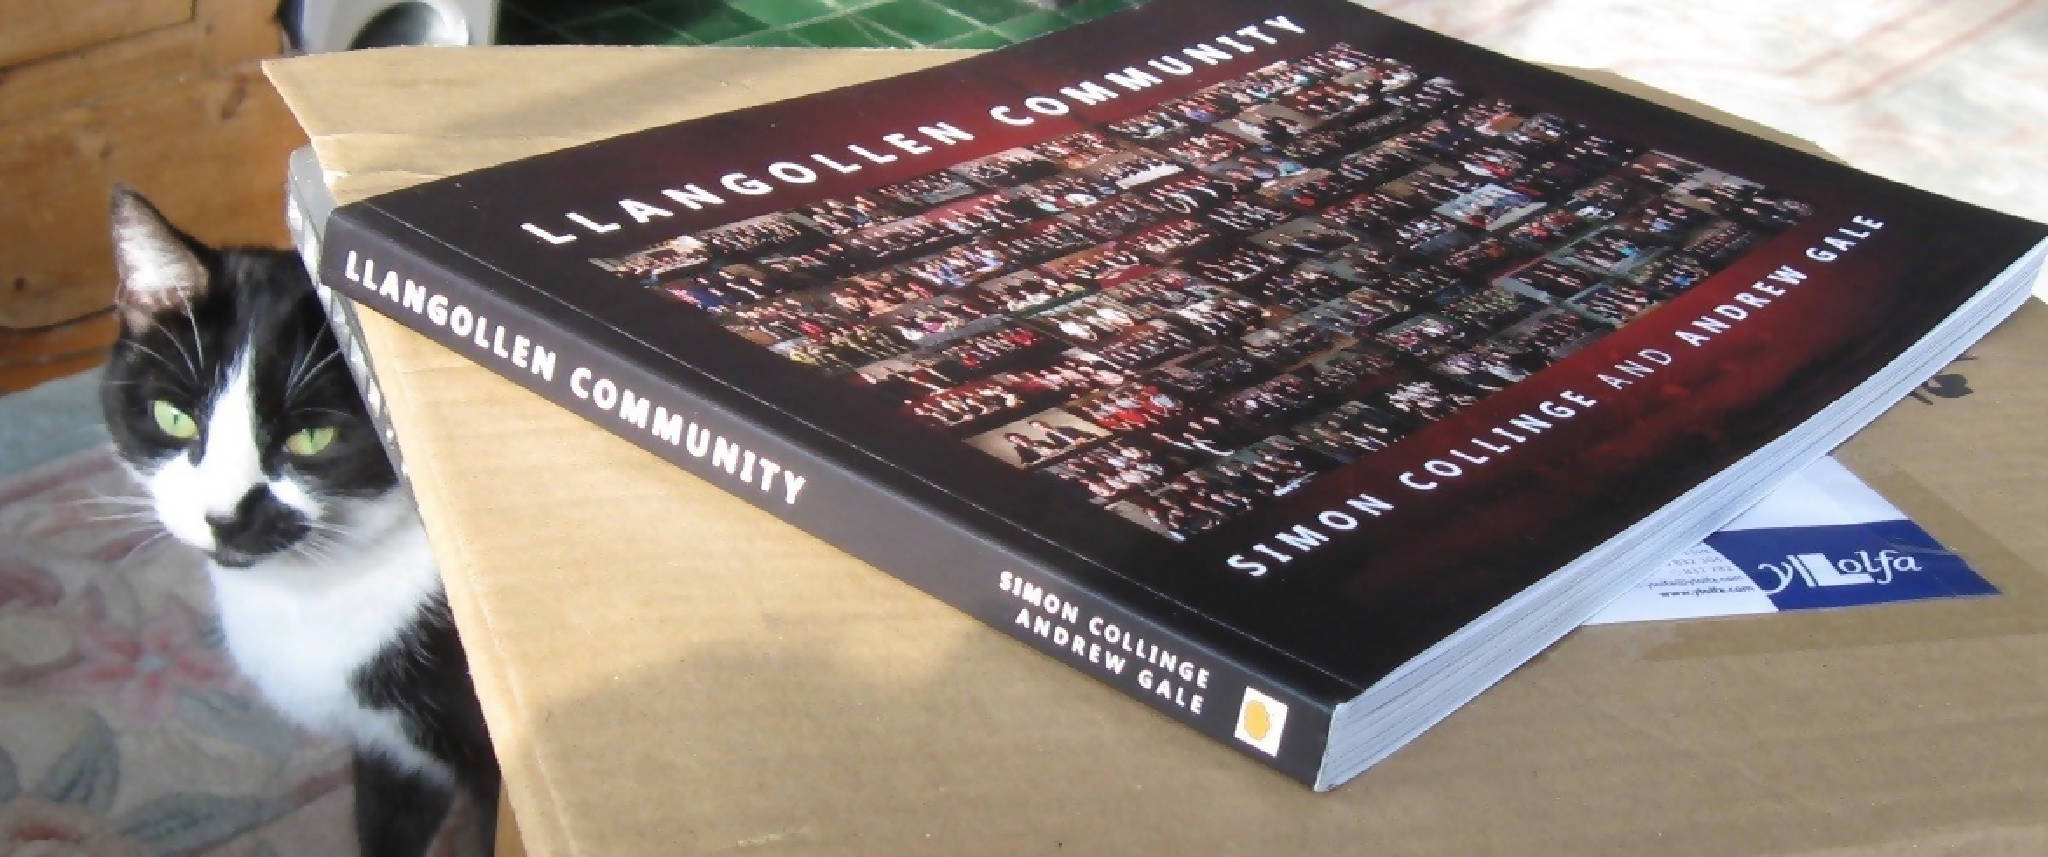 Llangollen Community Book